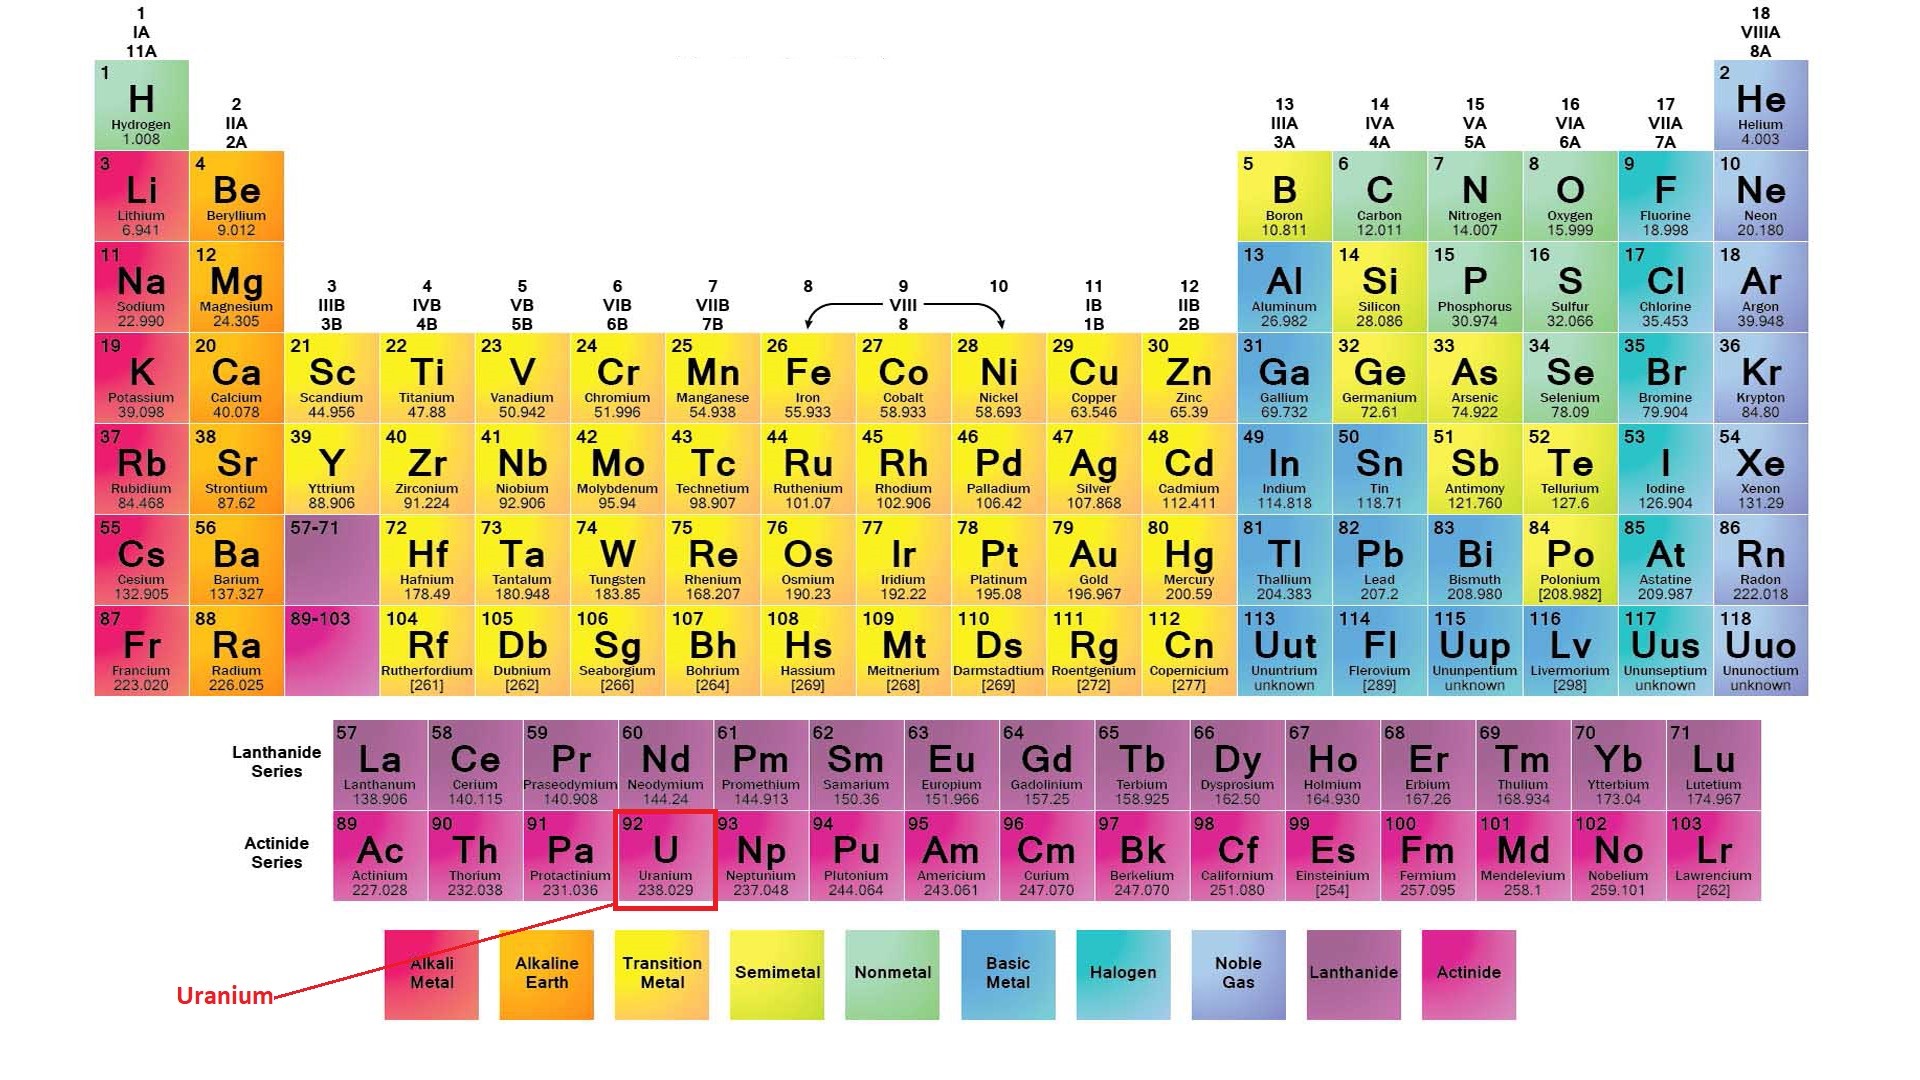 Uranium có số nguyên tử là 92 và ký hiệu U trong bảng tuần hoàn hóa học